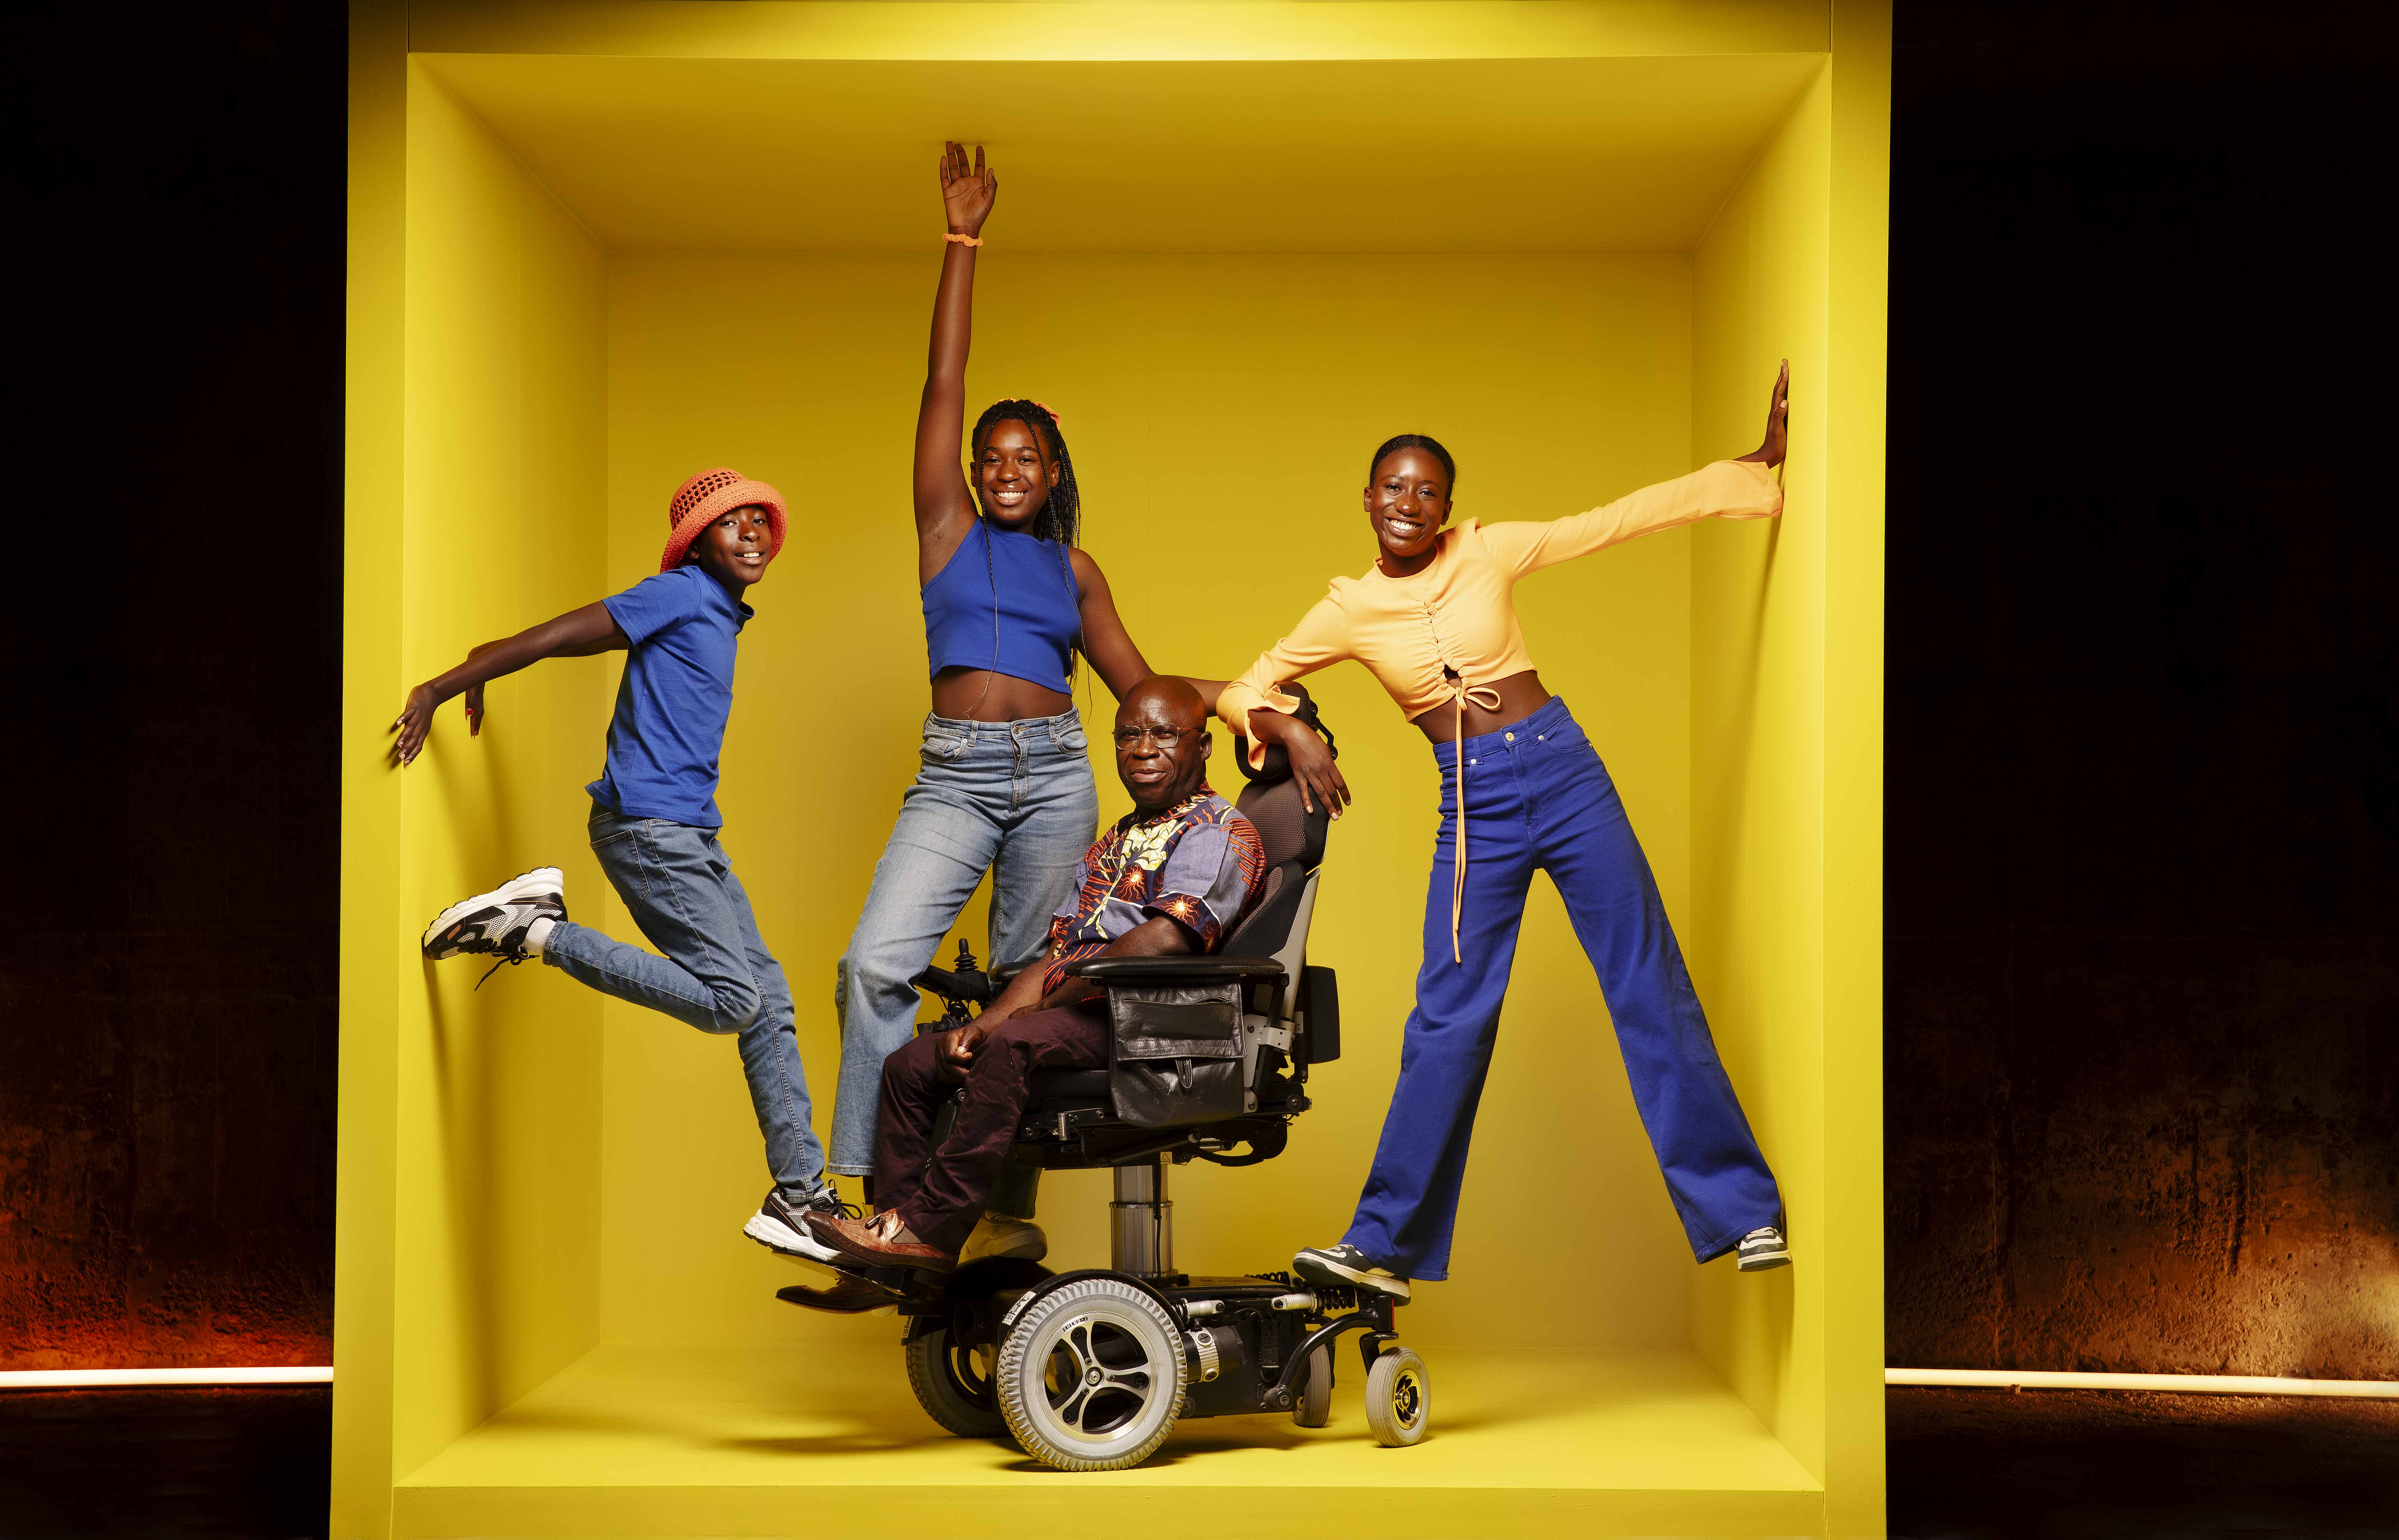 (1) Bihayo og tre av barna sine inne i en stor gul boks. Bihayo sitter i elektrisk rullestol, klærne til menneskene er fargerike i blå,brun og gul-nyanser. Barna balanserer på rullestolen. 